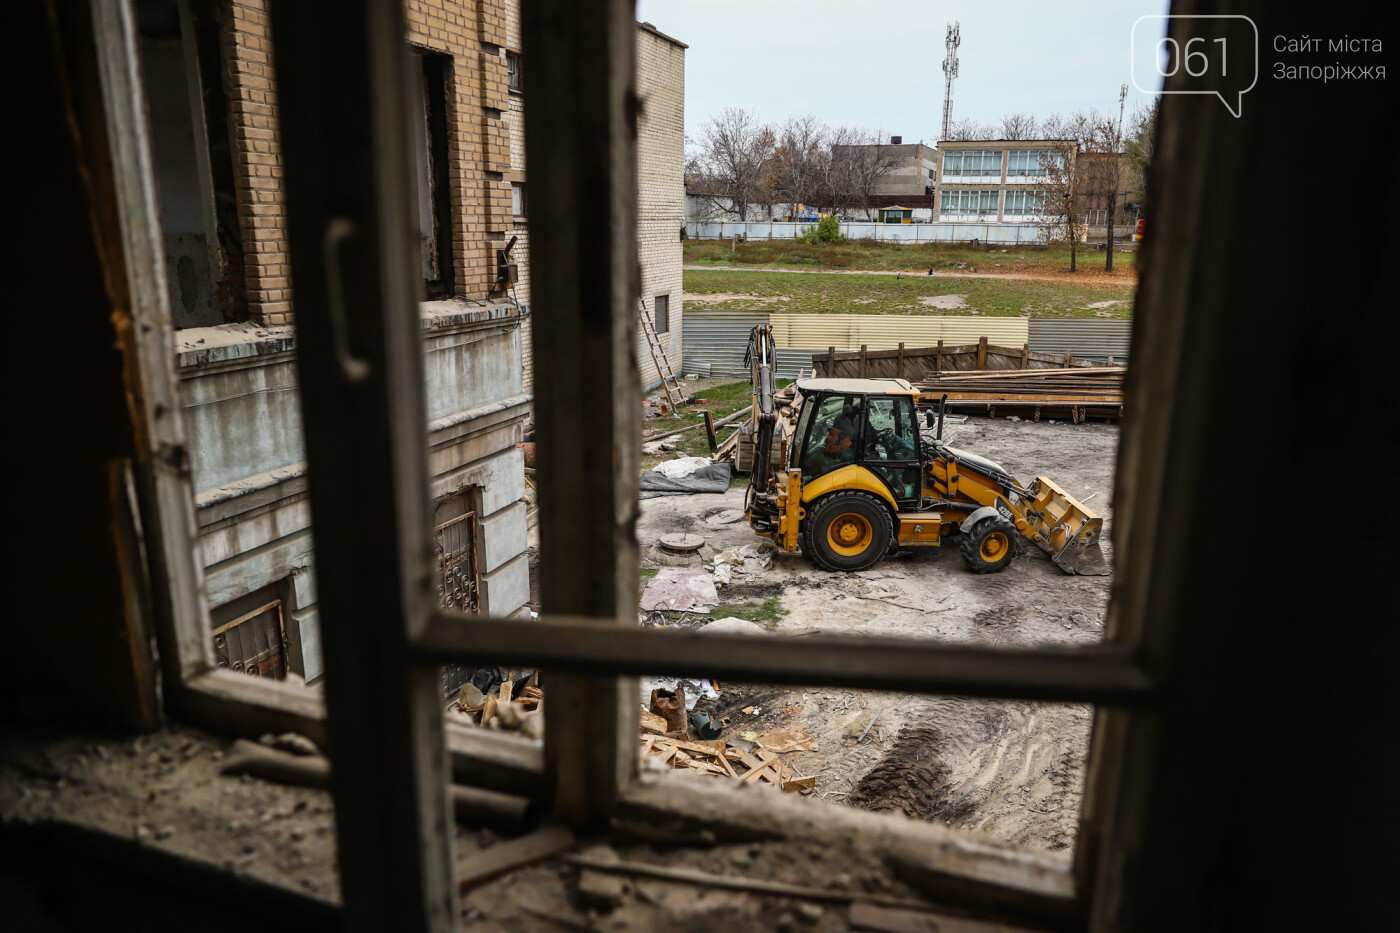 В Запорожье восстанавливают школу, которая пострадала во время масштабного пожара 5 лет назад, - ФОТОРЕПОРТАЖ , фото-26